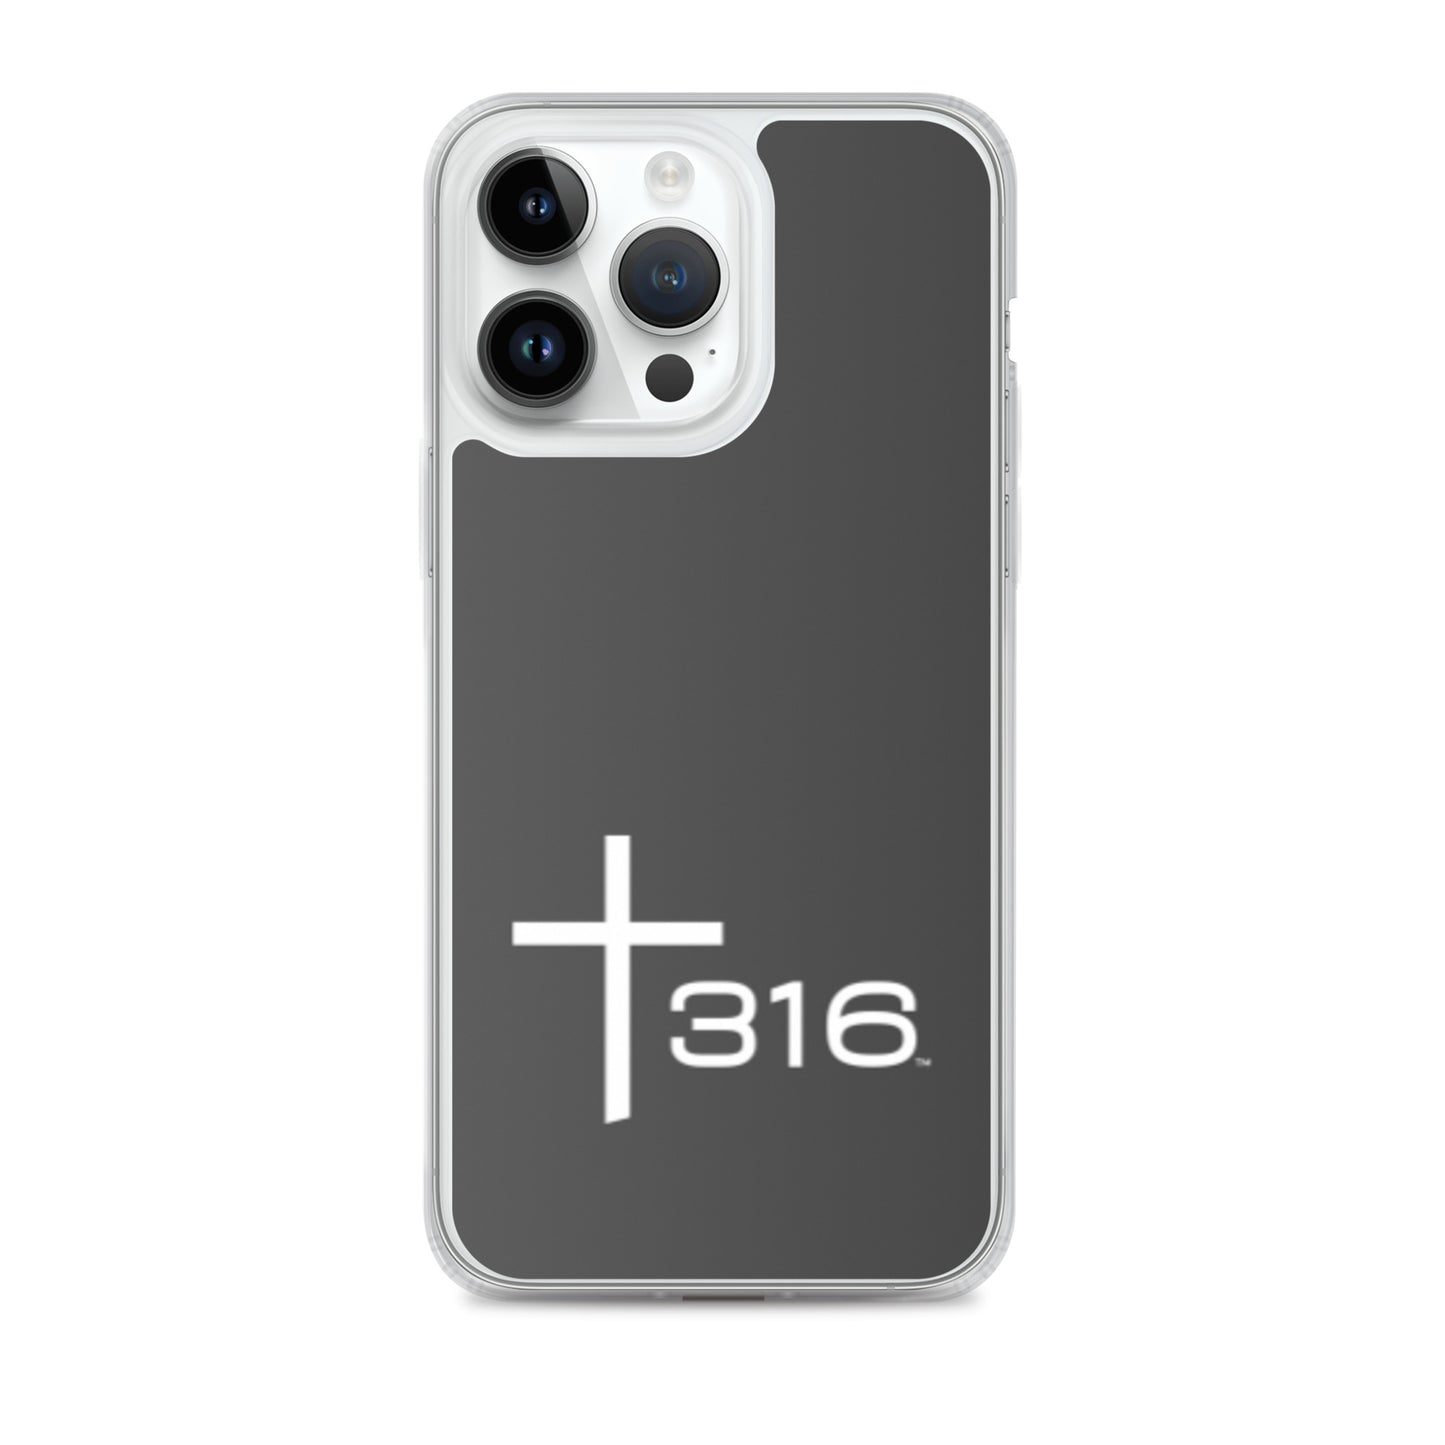 Trinity 316 ICON iPhone Case